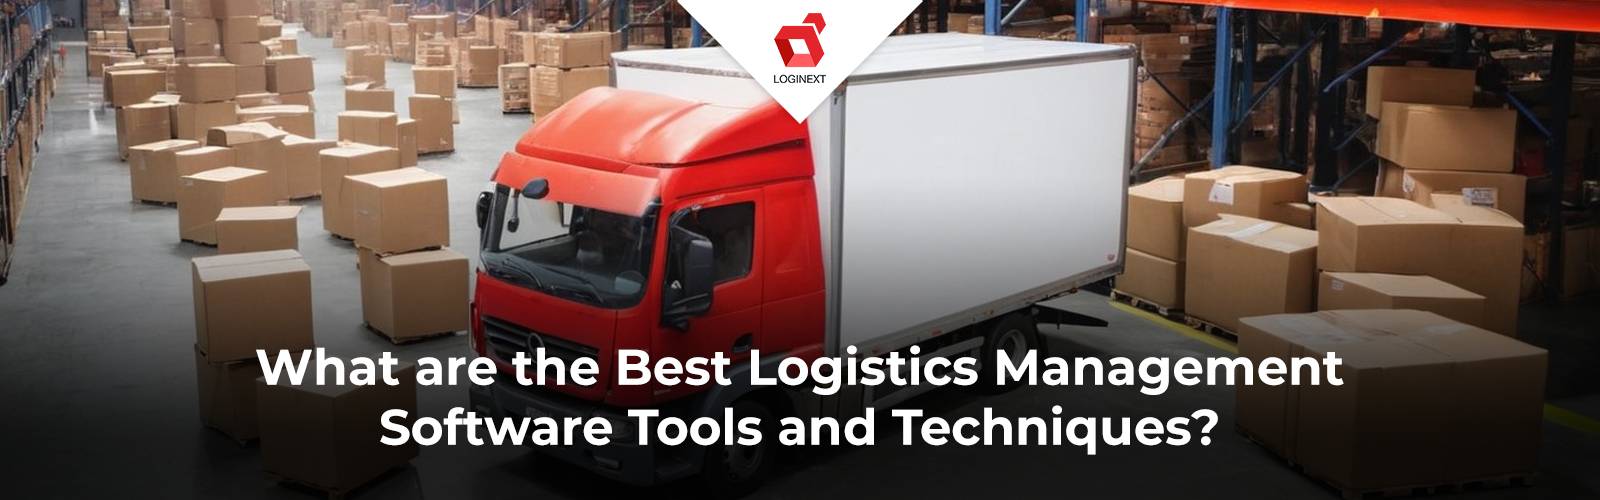 Vilka är de bästa verktygen och teknikerna för logistikhantering?